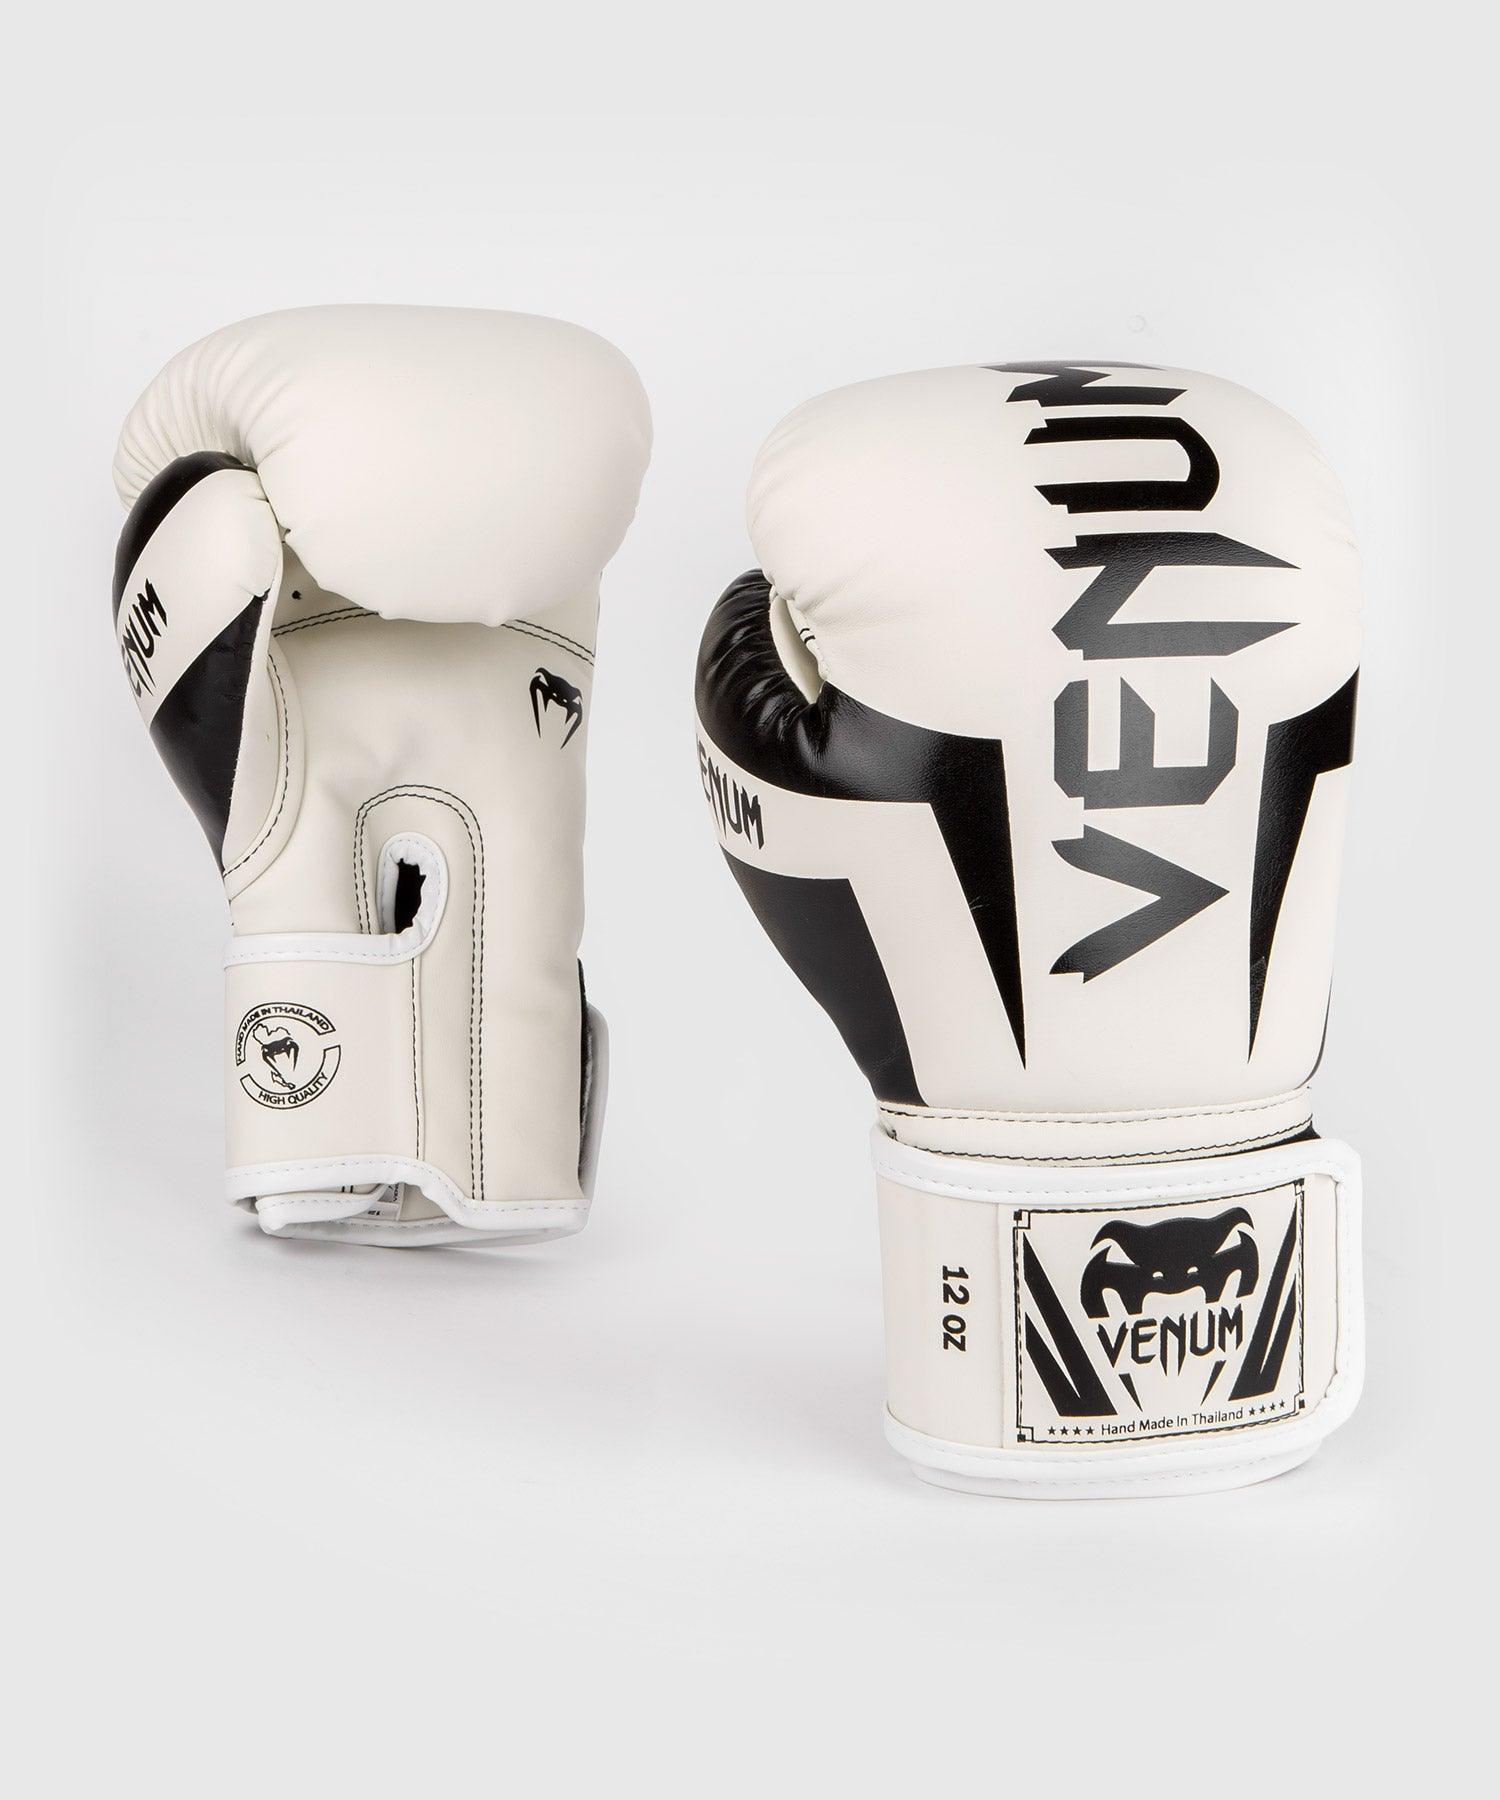 gant de boxe Venum Elite Boxing Gloves 